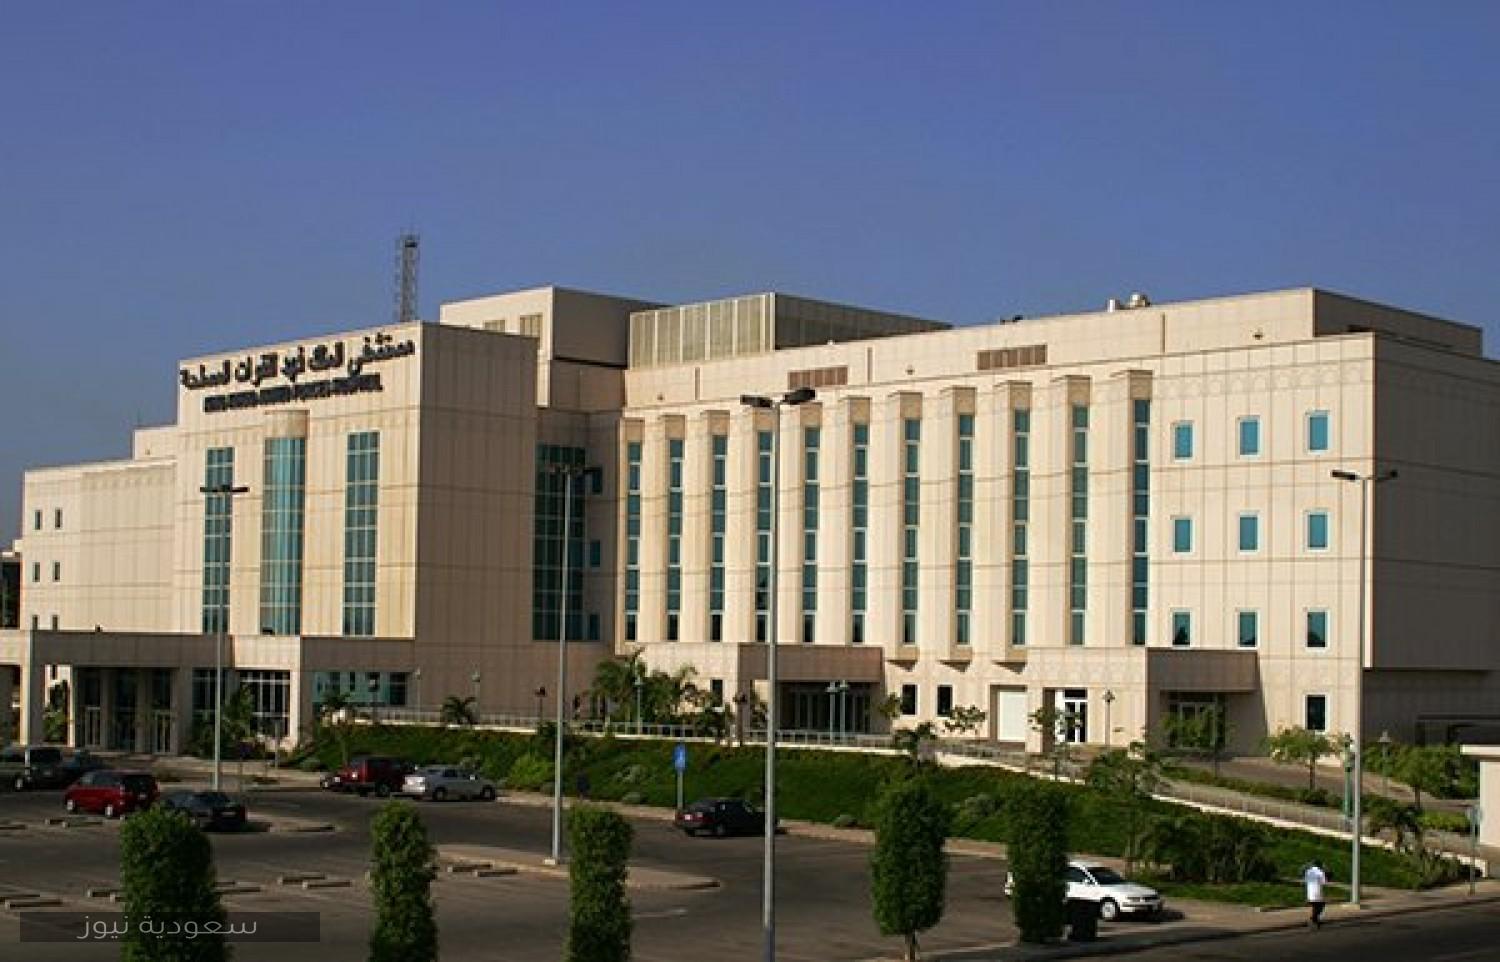 تسجيل دخول مستشفى الملك فهد للقوات المسلحة بجدة وتحميل التطبيق سعودية نيوز